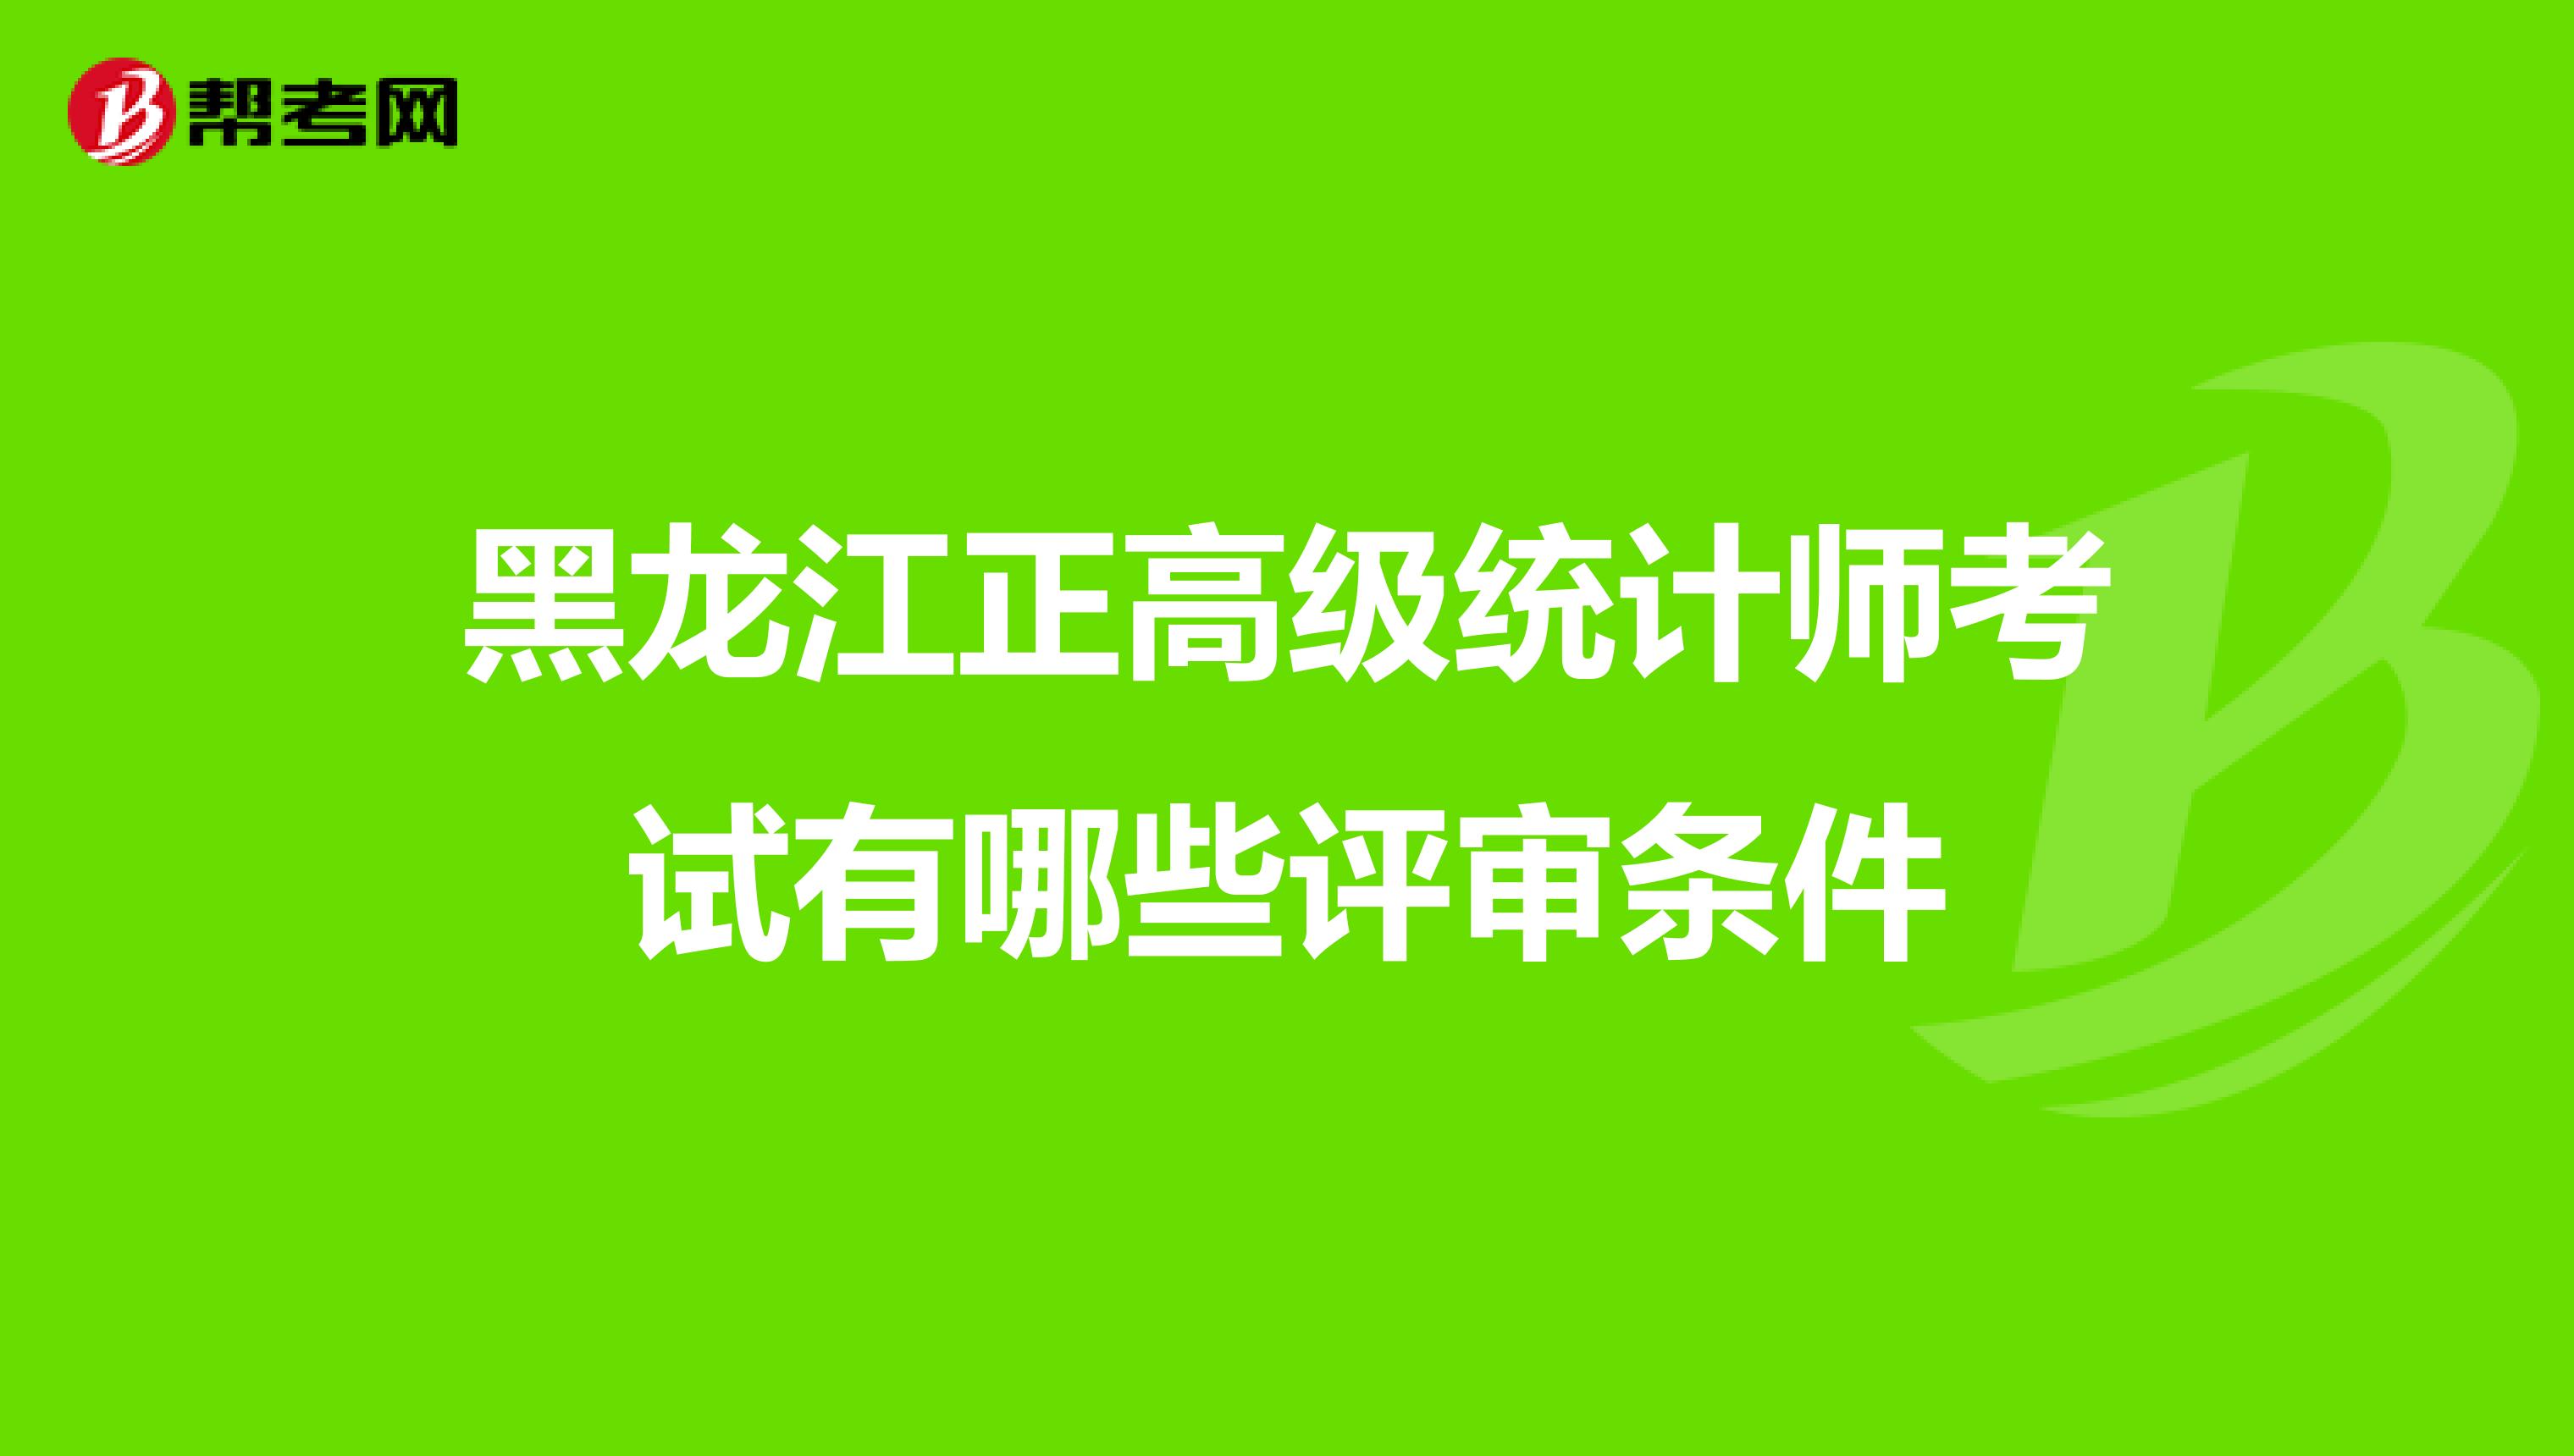 黑龙江正高级统计师考试有哪些评审条件